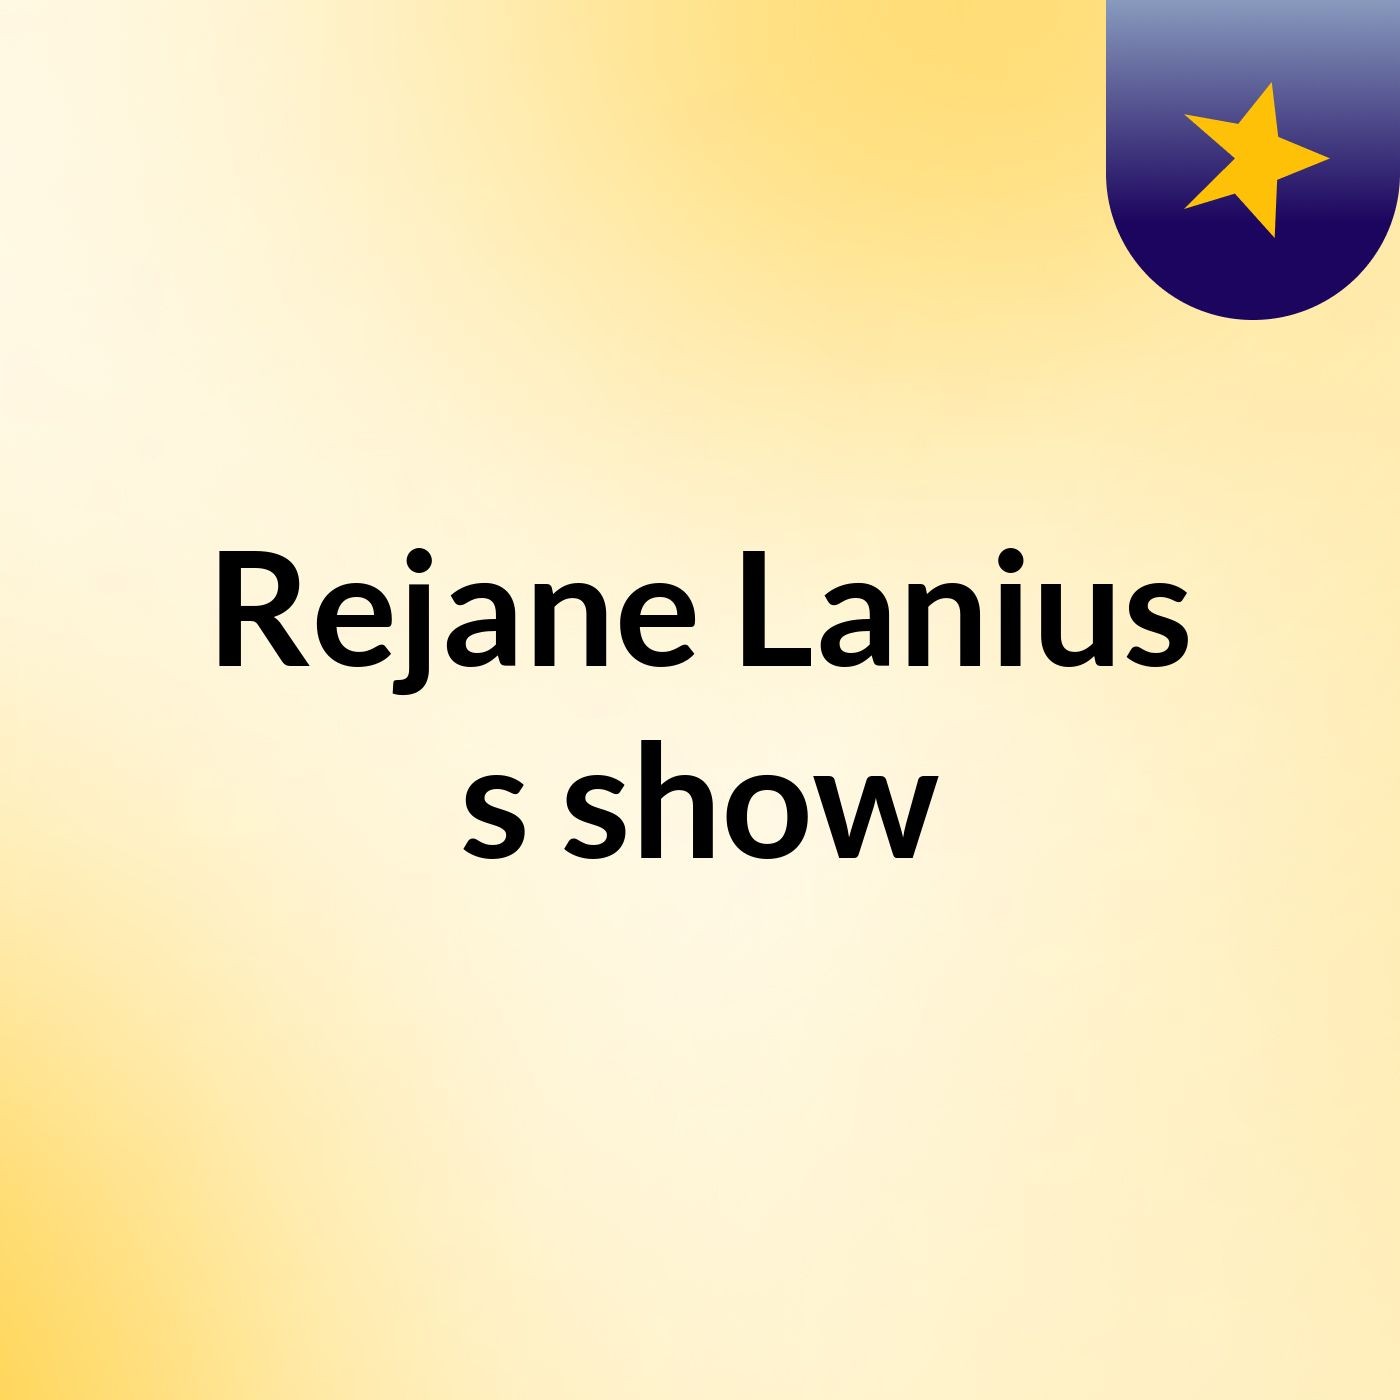 Rejane Lanius's show